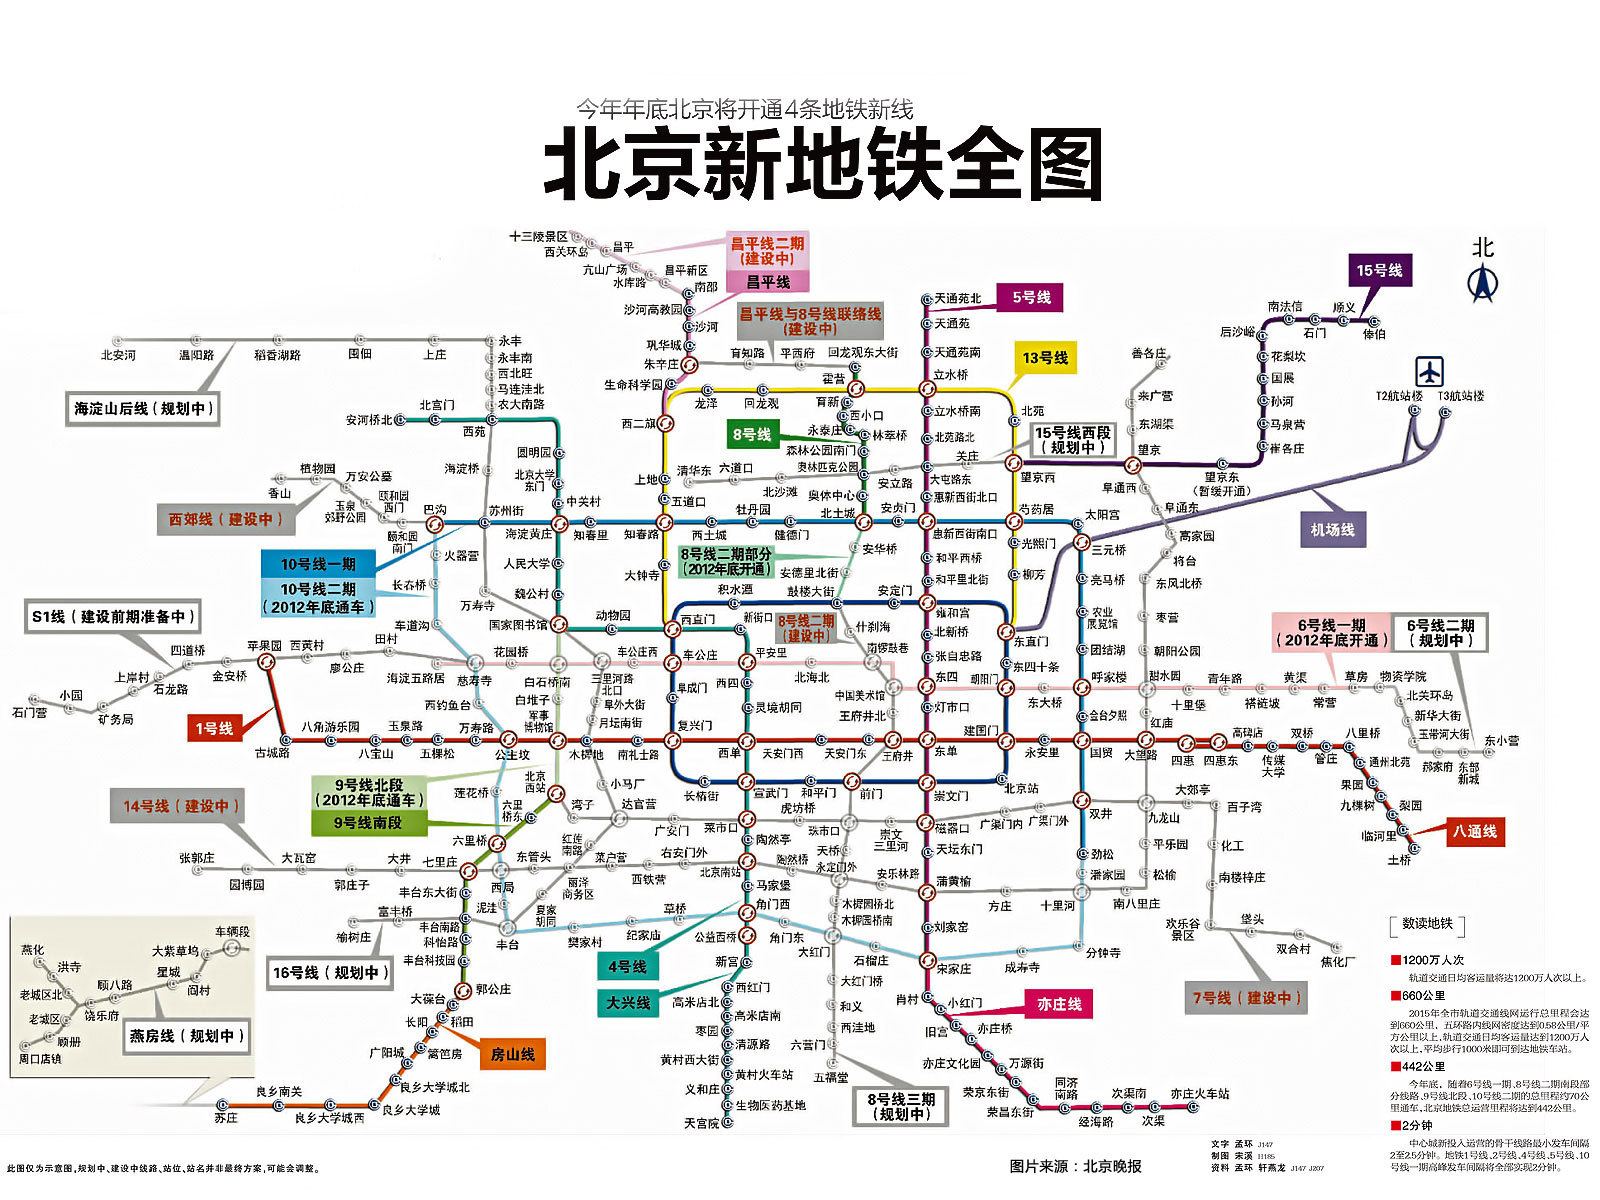 北京地铁图放大图2020图片